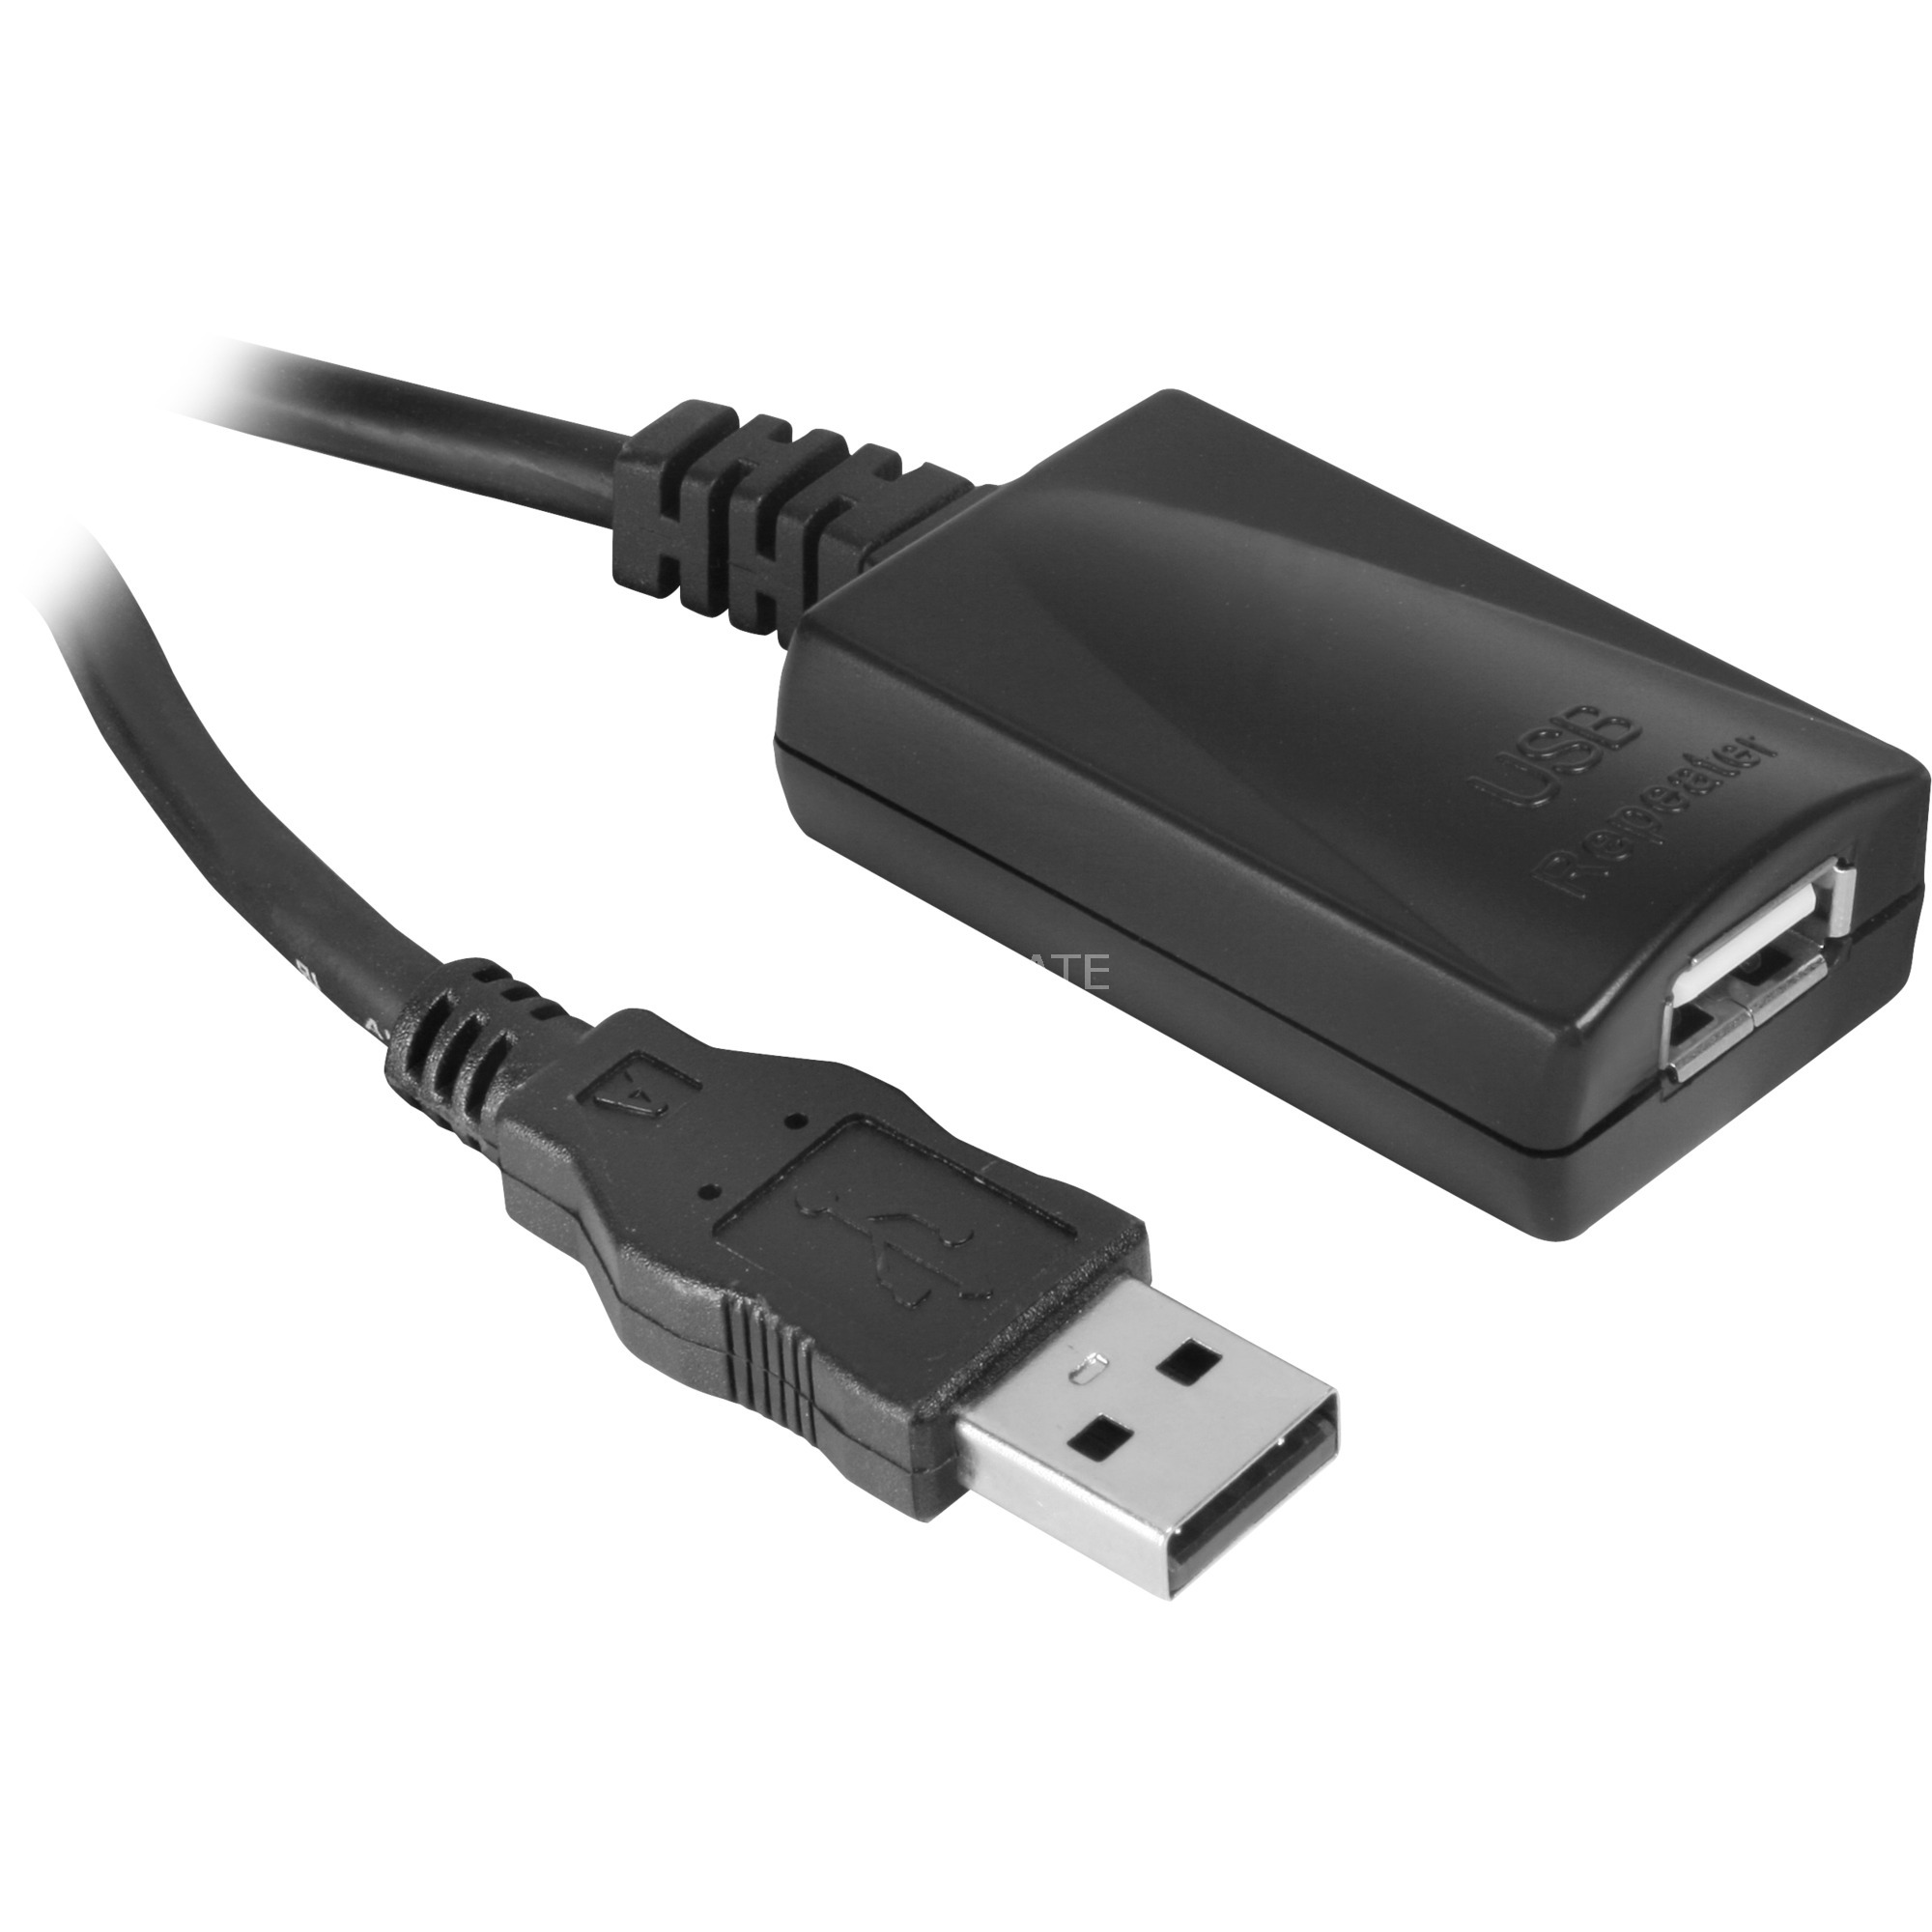 Image of Alternate - Kabel Repeater USB 2.0, Verlängerungskabel online einkaufen bei Alternate